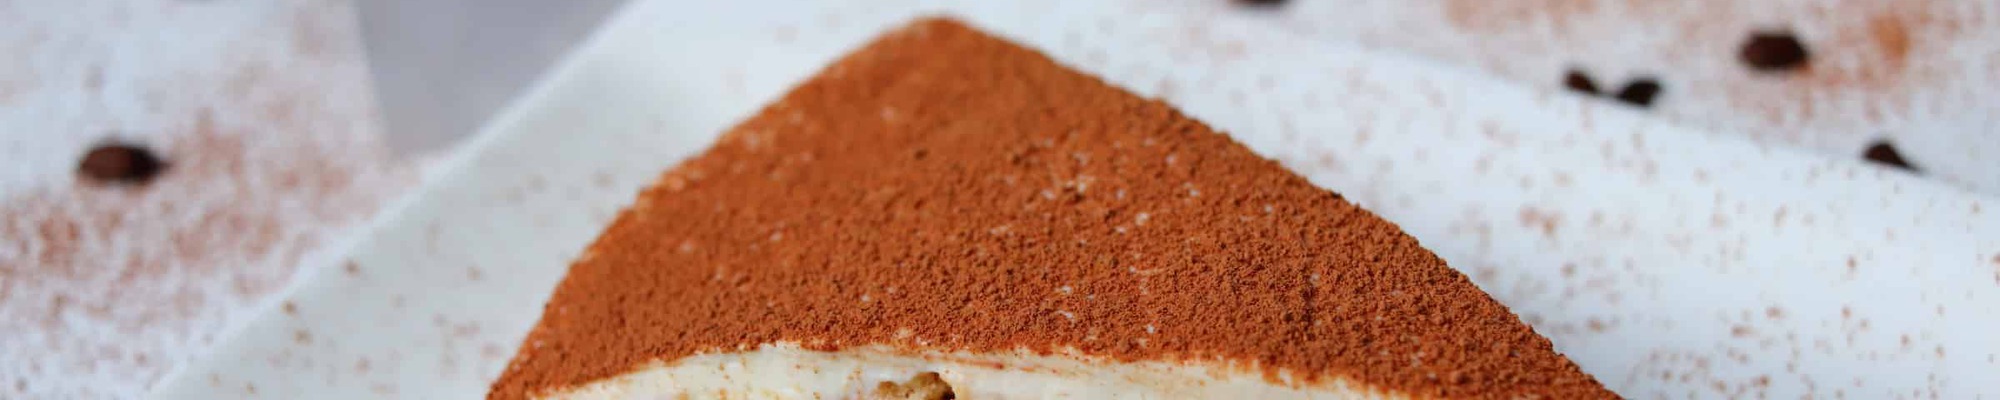 Fit tiramisu torta plná bielkovín, s nízkym množstvom tukov a famóznou chuťou (Recept)